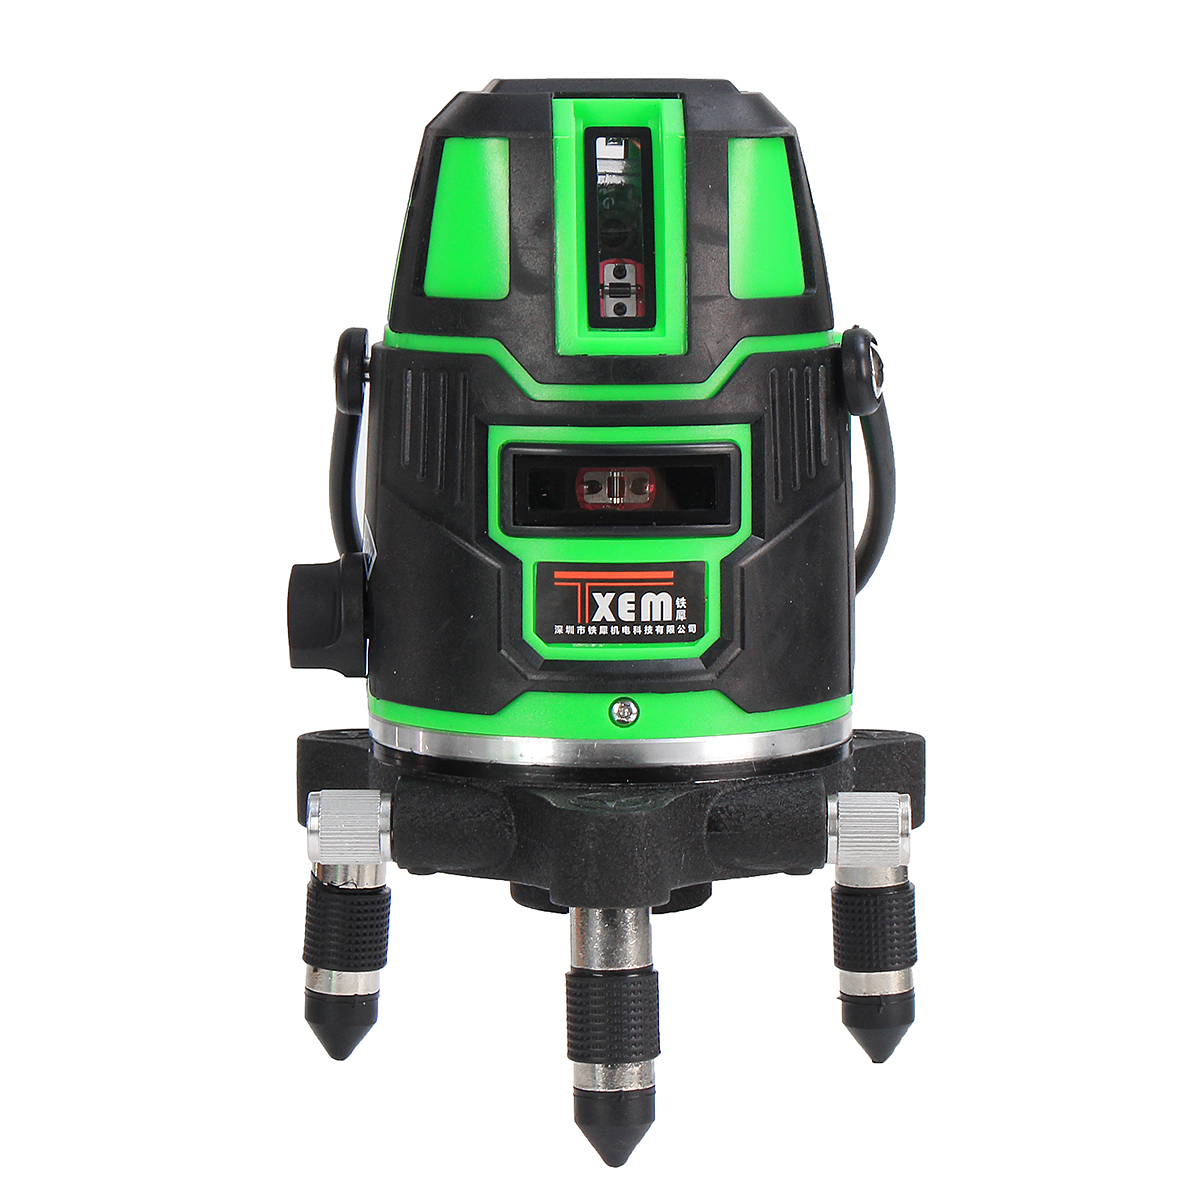 

360 ° Rotary Green 5 Line Лазер Уровень Самовыравнивание Вертикальное измерение горизонтального уровня Инструмент